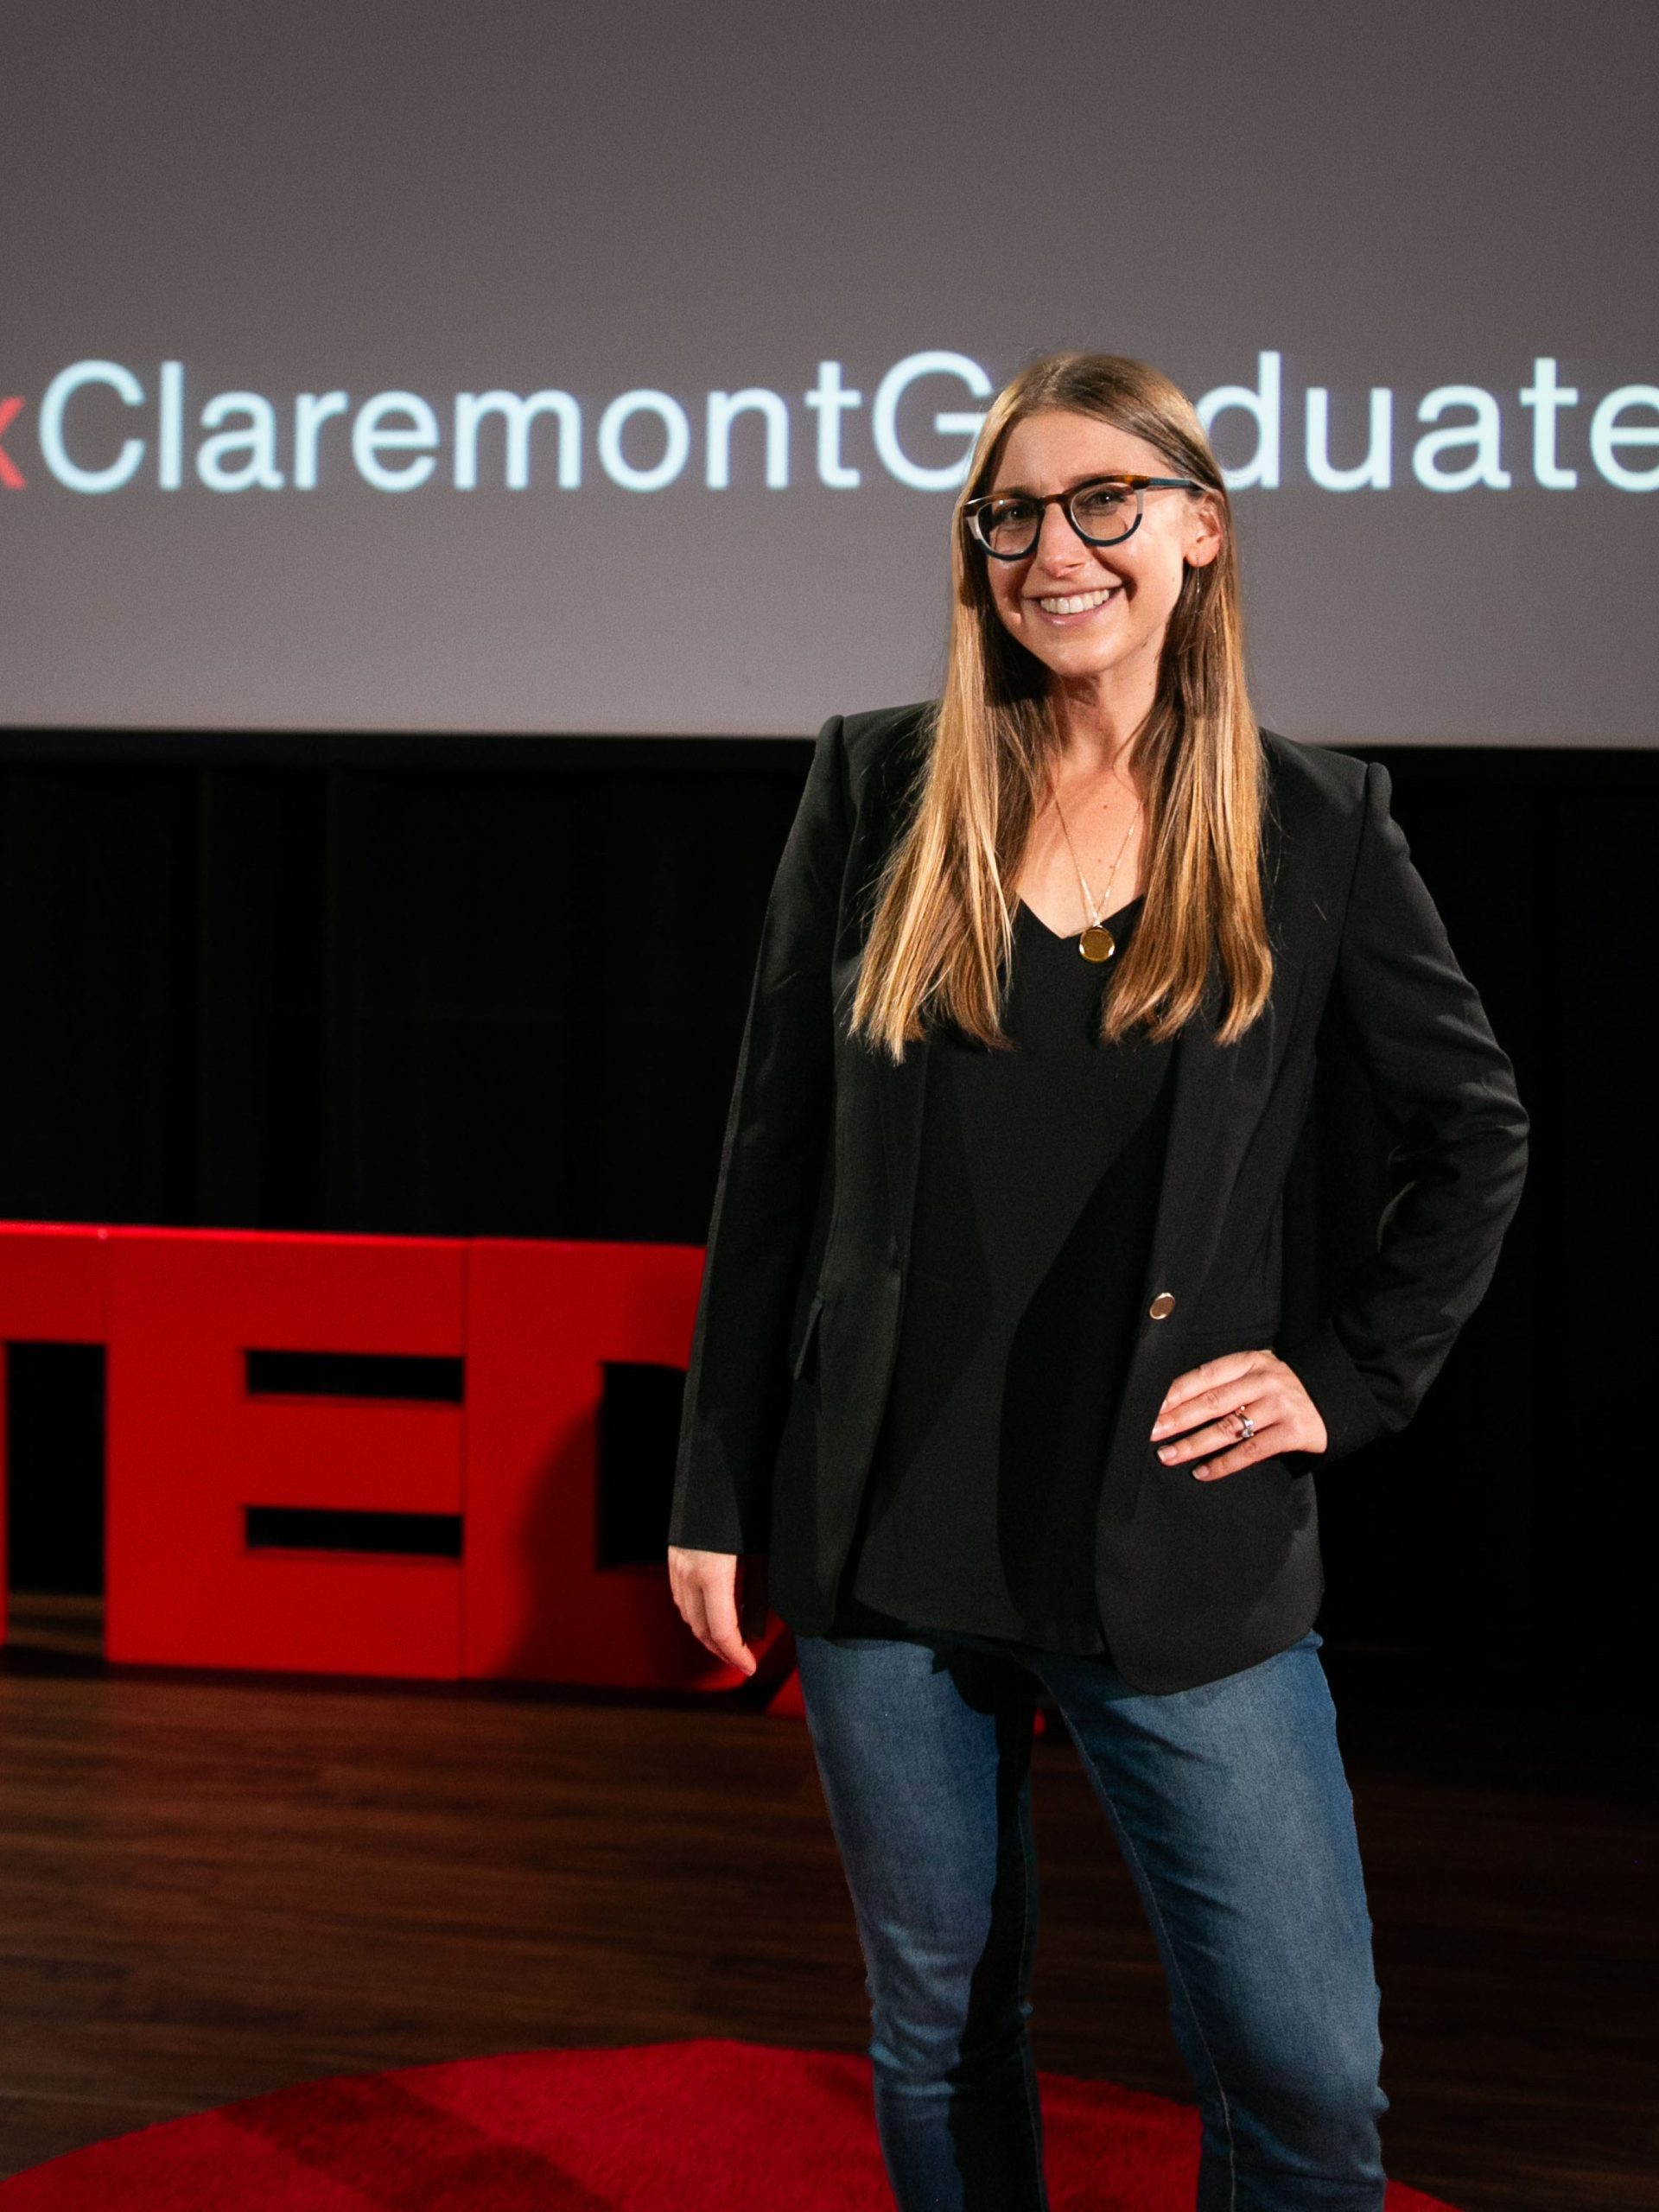 alyssa standing in front of TEDx sign